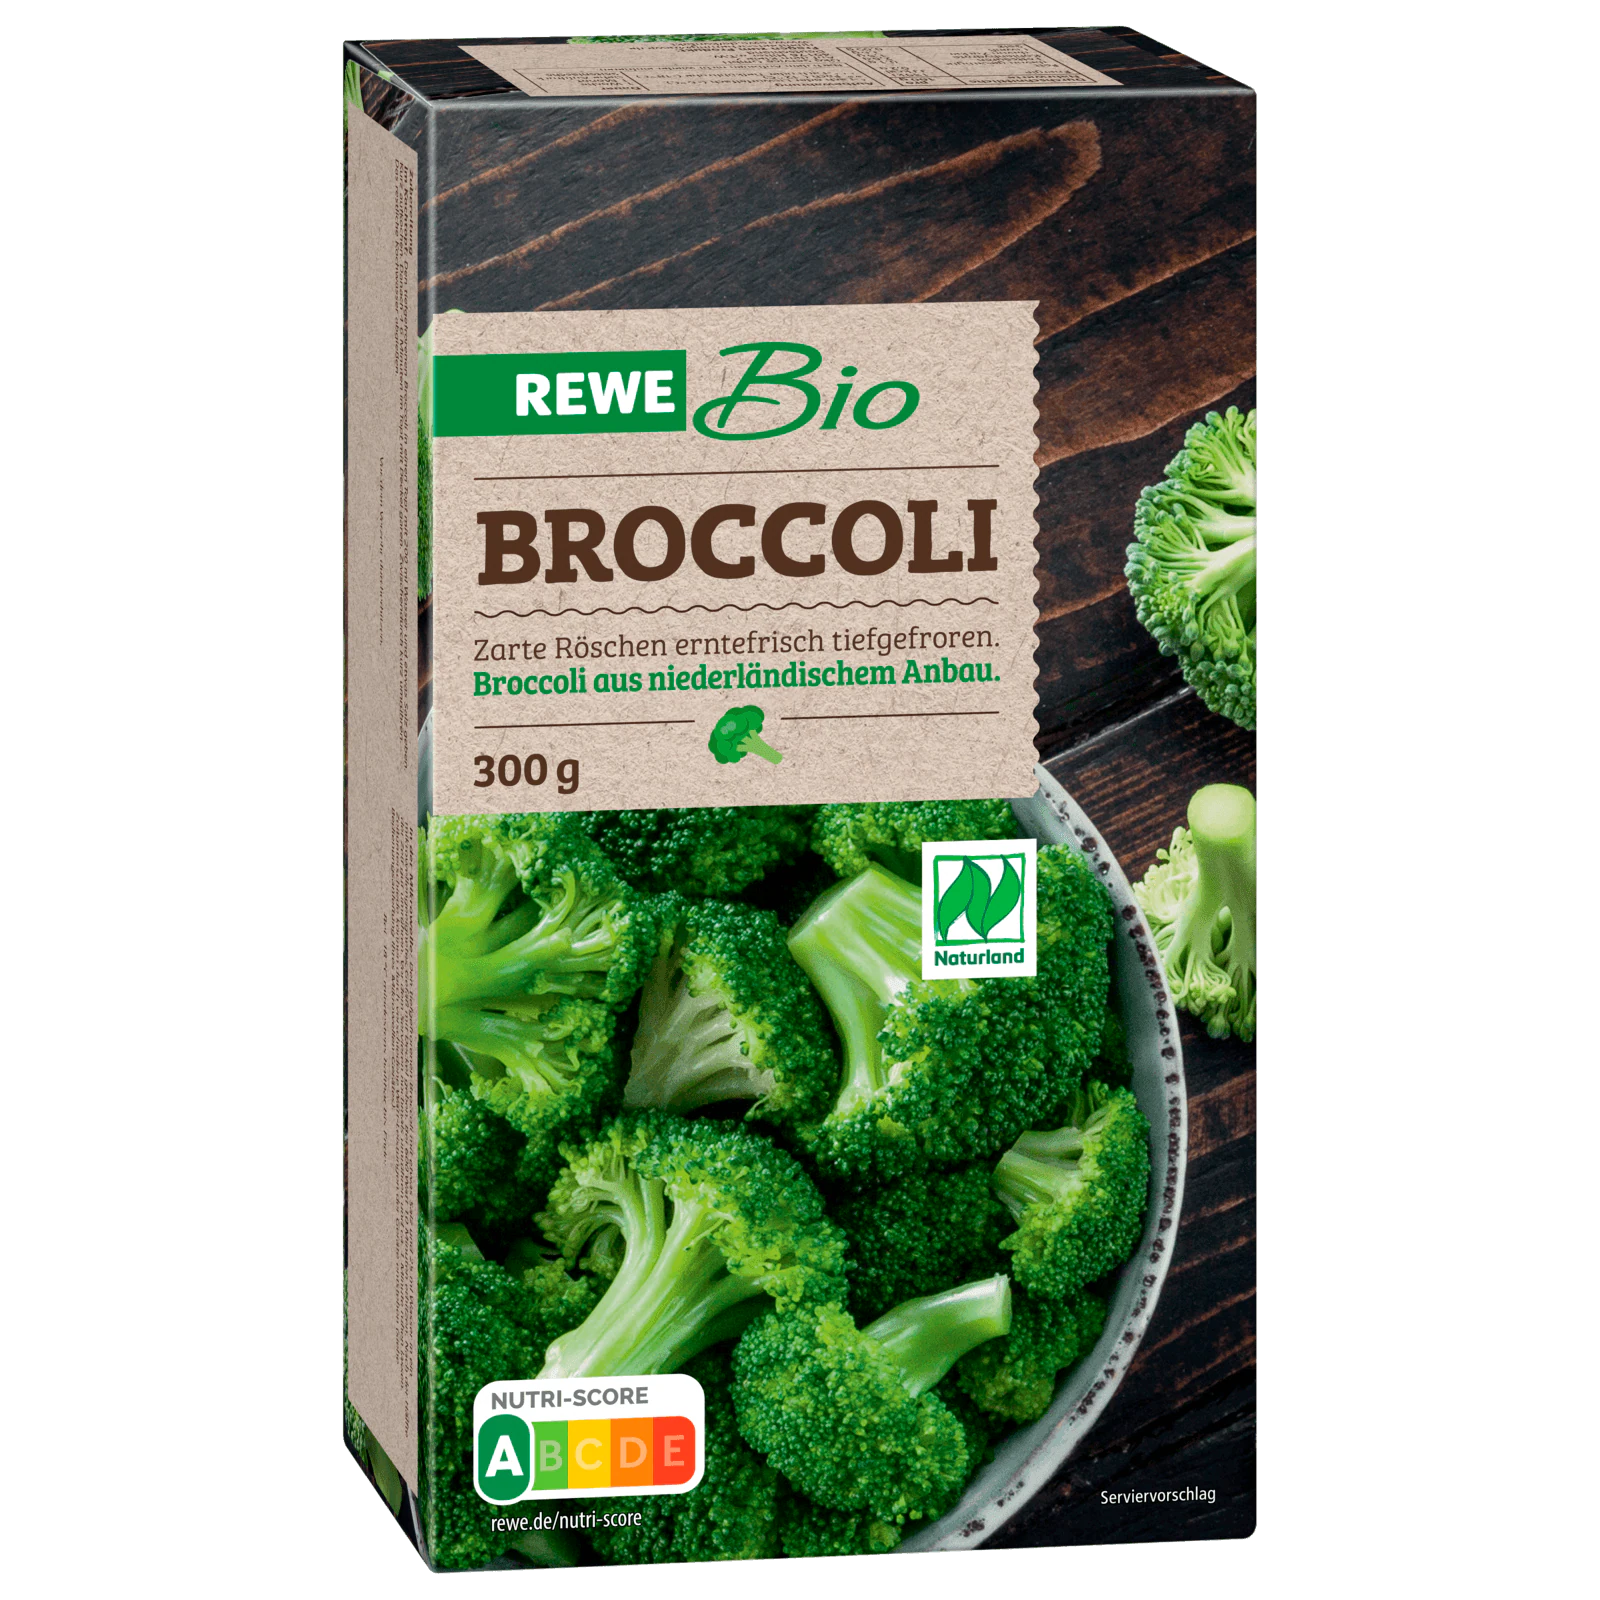 bestellen! 300g online tiefgefroren Broccoli REWE Bio bei REWE